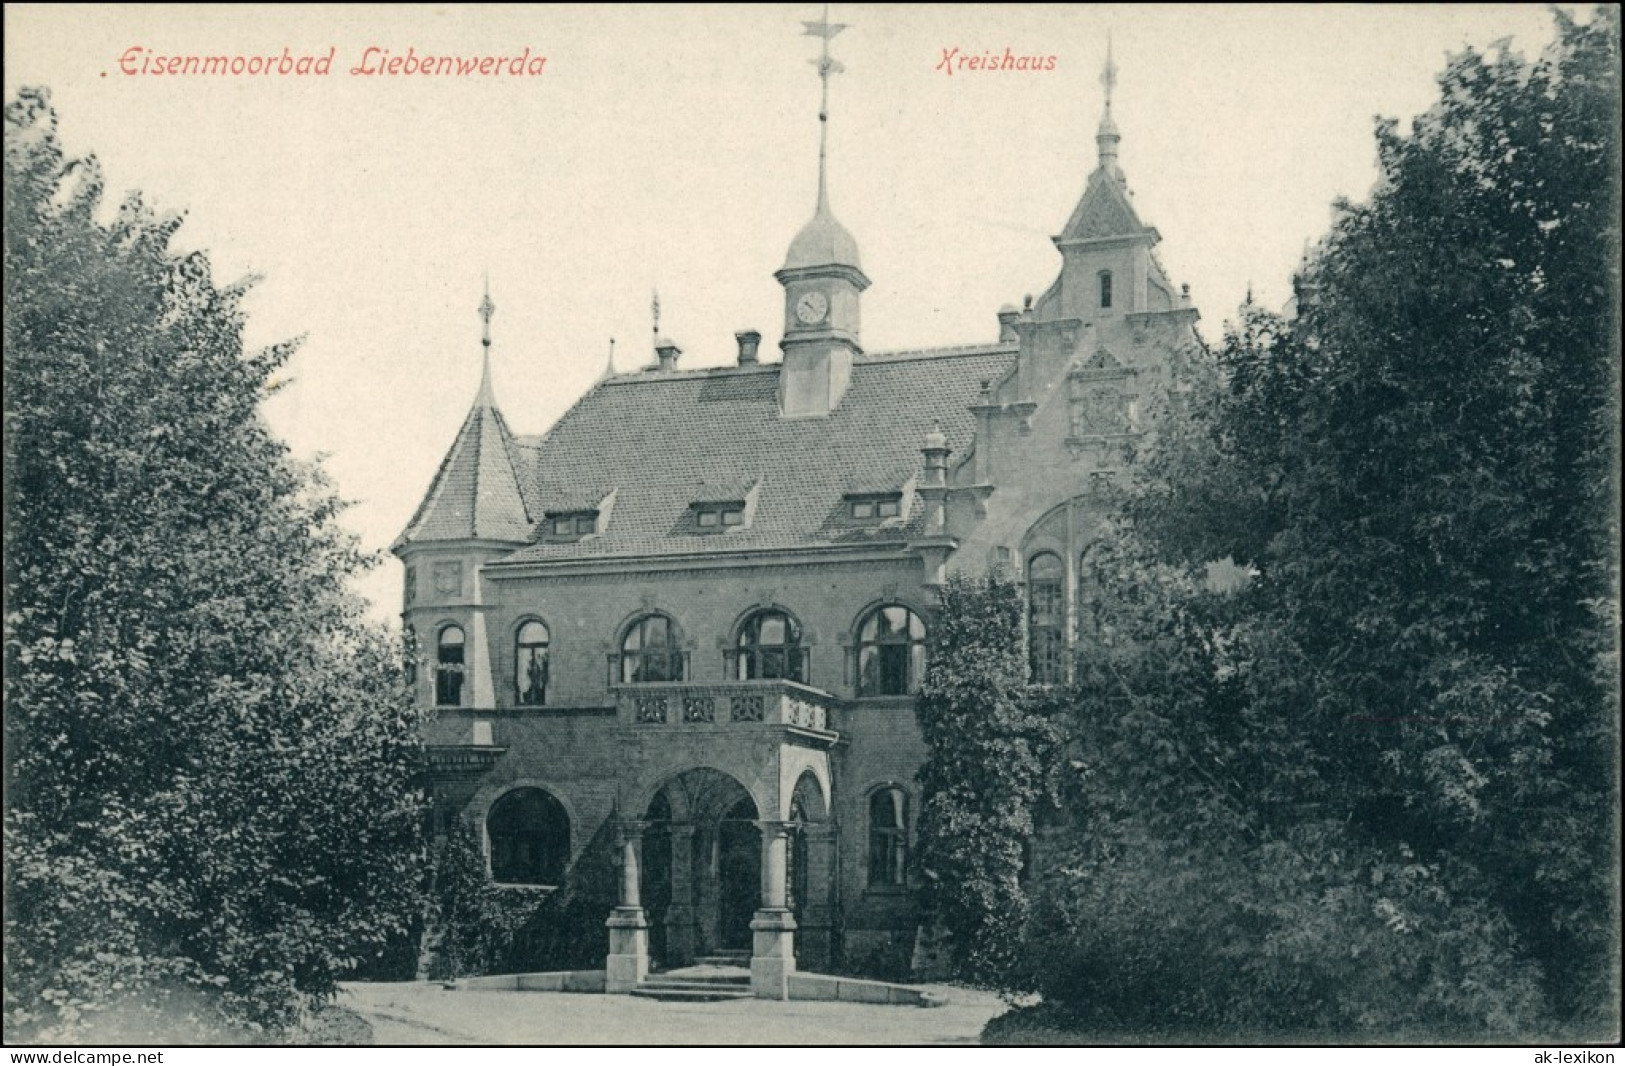 Ansichtskarte Bad Liebenwerda Kreishaus (Eisenmoorbad) 1913 C - Bad Liebenwerda